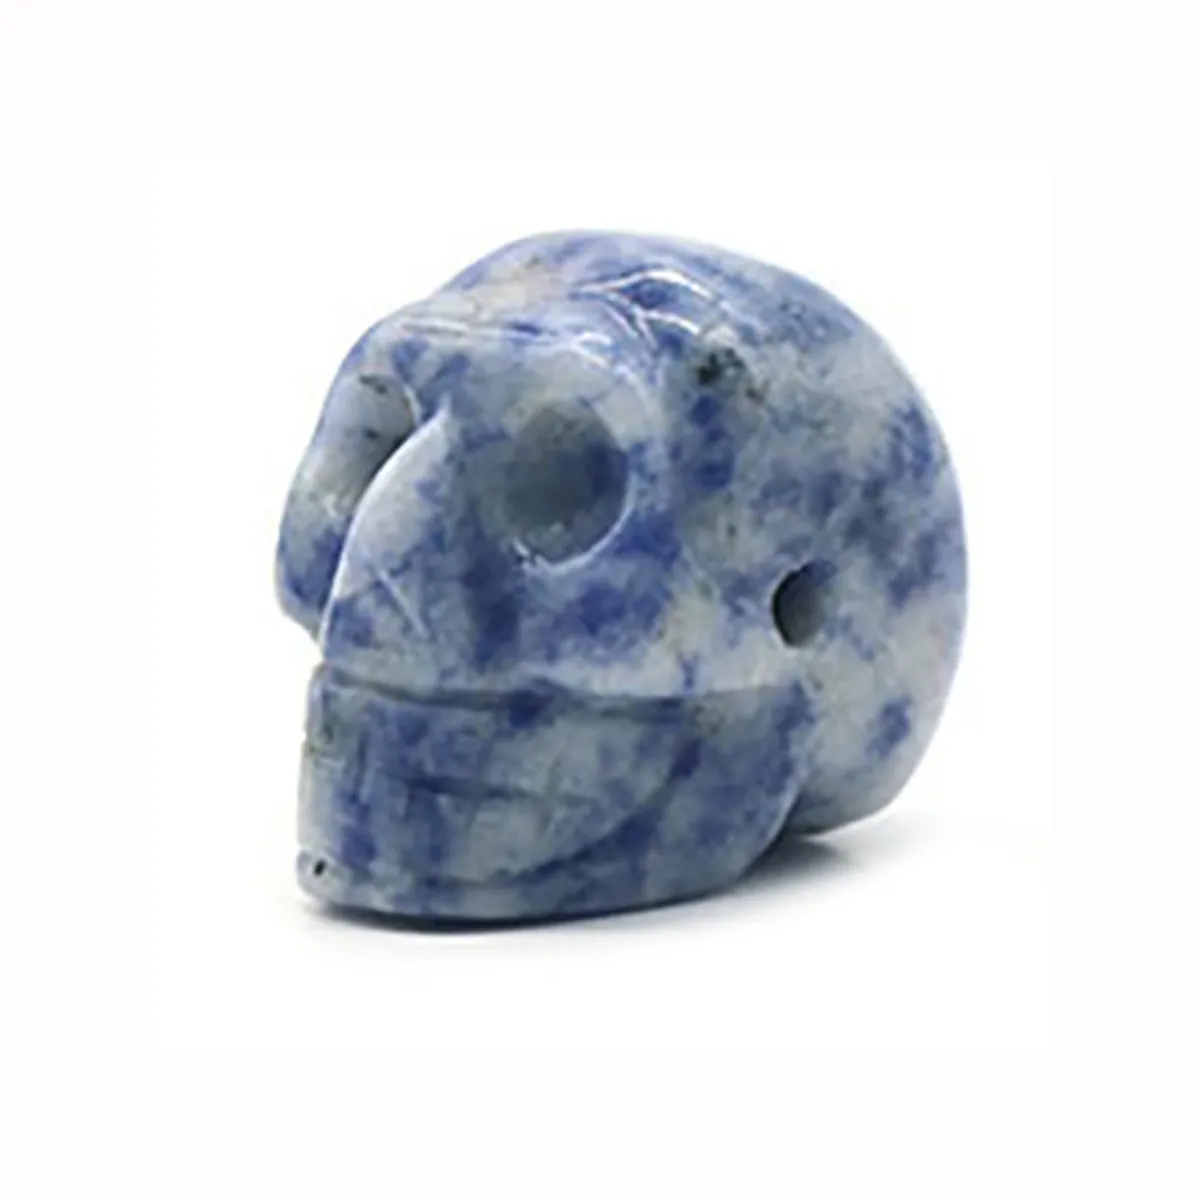 23mm naturel Sodalite crâne Figurine Reiki énergie de guérison pierres ornements sculpté Statue pierre précieuse décor à la maison Halloween cadeau